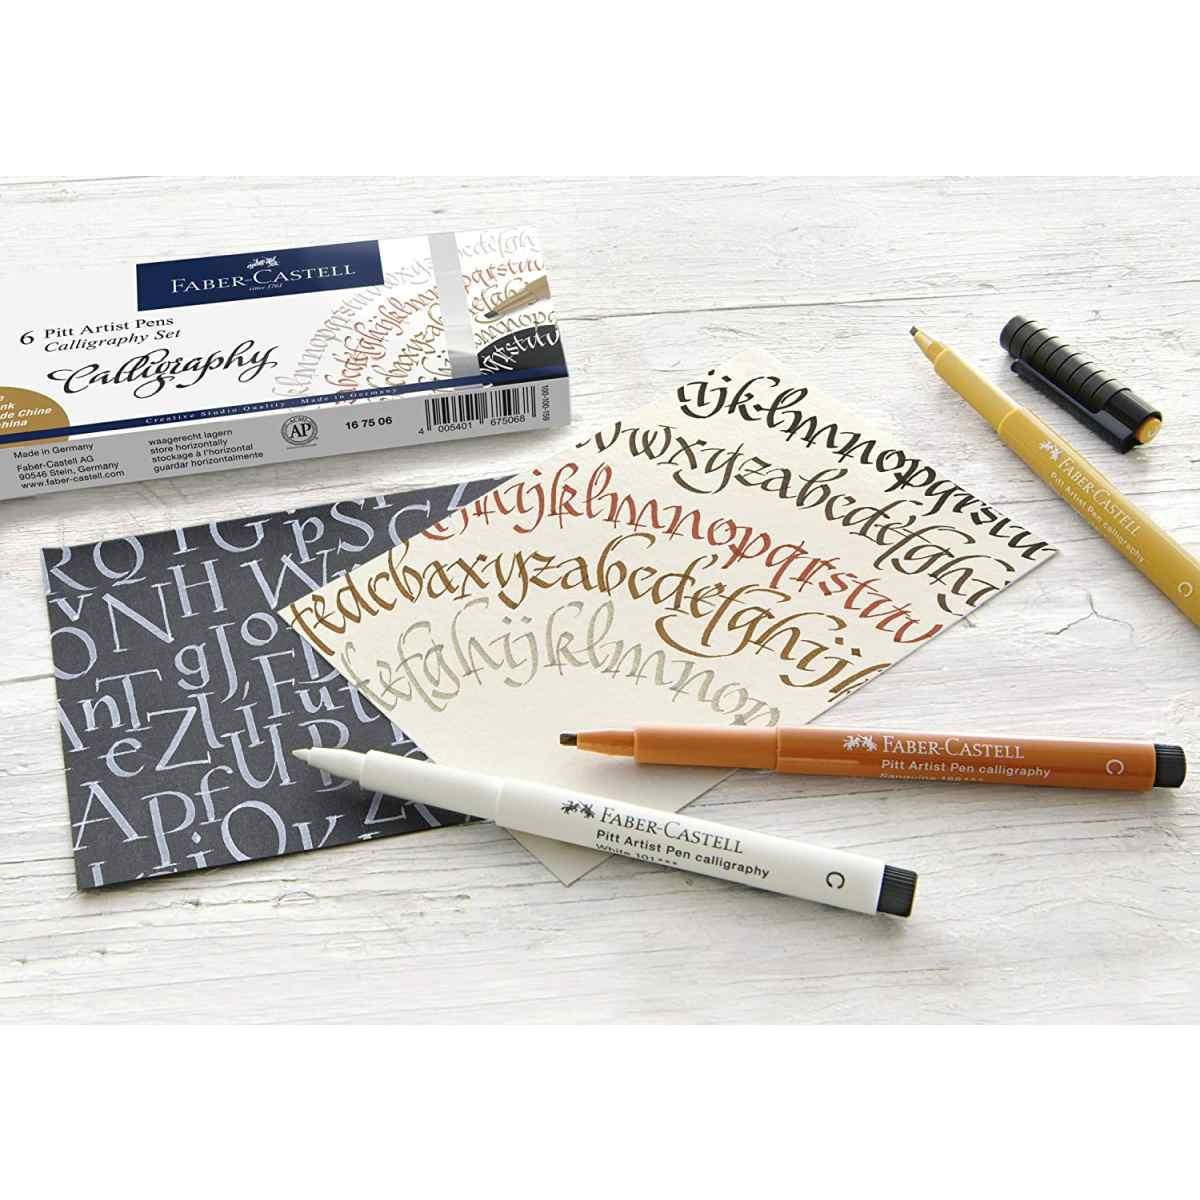 Faber-castell - calligraphy set - 4 pitt artist pens